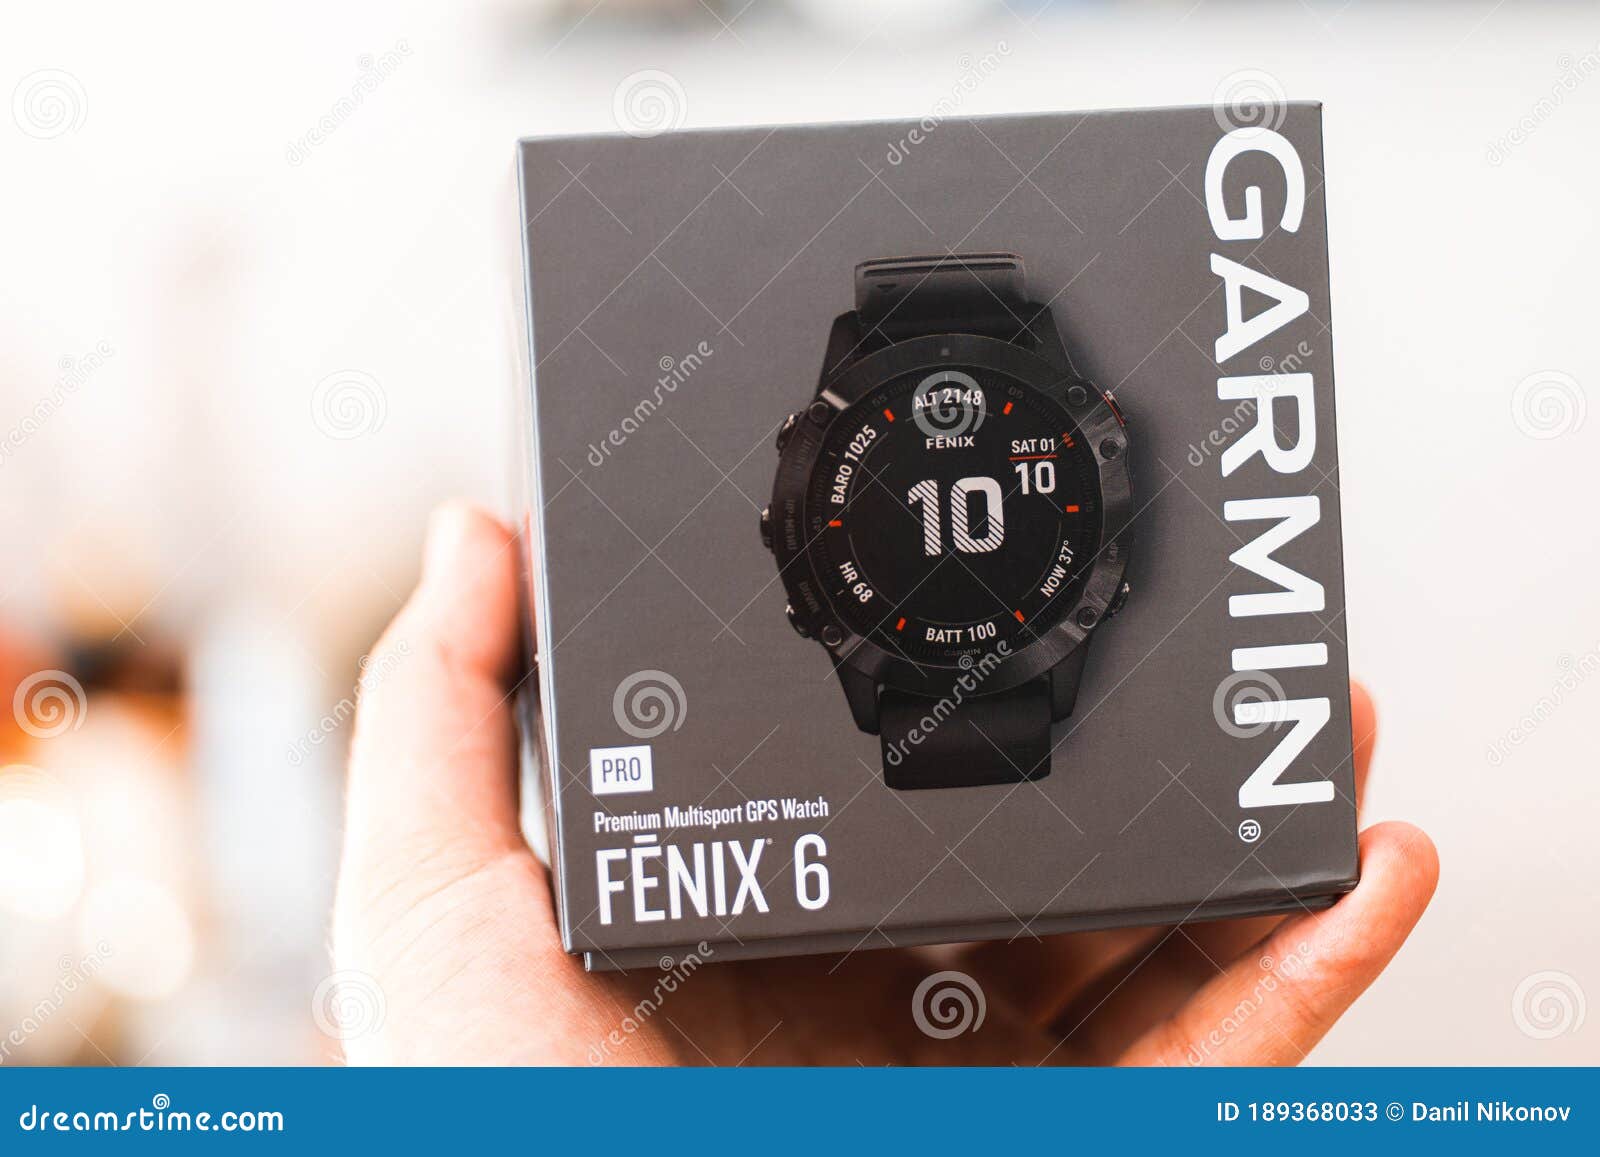 Fenix Garmin Stock Photos không chỉ là những bức ảnh đơn thuần về đồng hồ thông minh mà còn là nguồn cảm hứng tuyệt vời để bạn tìm hiểu và lựa chọn cho mình một sản phẩm chất lượng. Với nhiều mẫu mã, kiểu dáng và tính năng khác nhau, chắc chắn sẽ làm bạn hài lòng. Hãy cùng chiêm ngưỡng các hình ảnh đẹp từ Fenix Garmin Stock Photos ngay nhé!